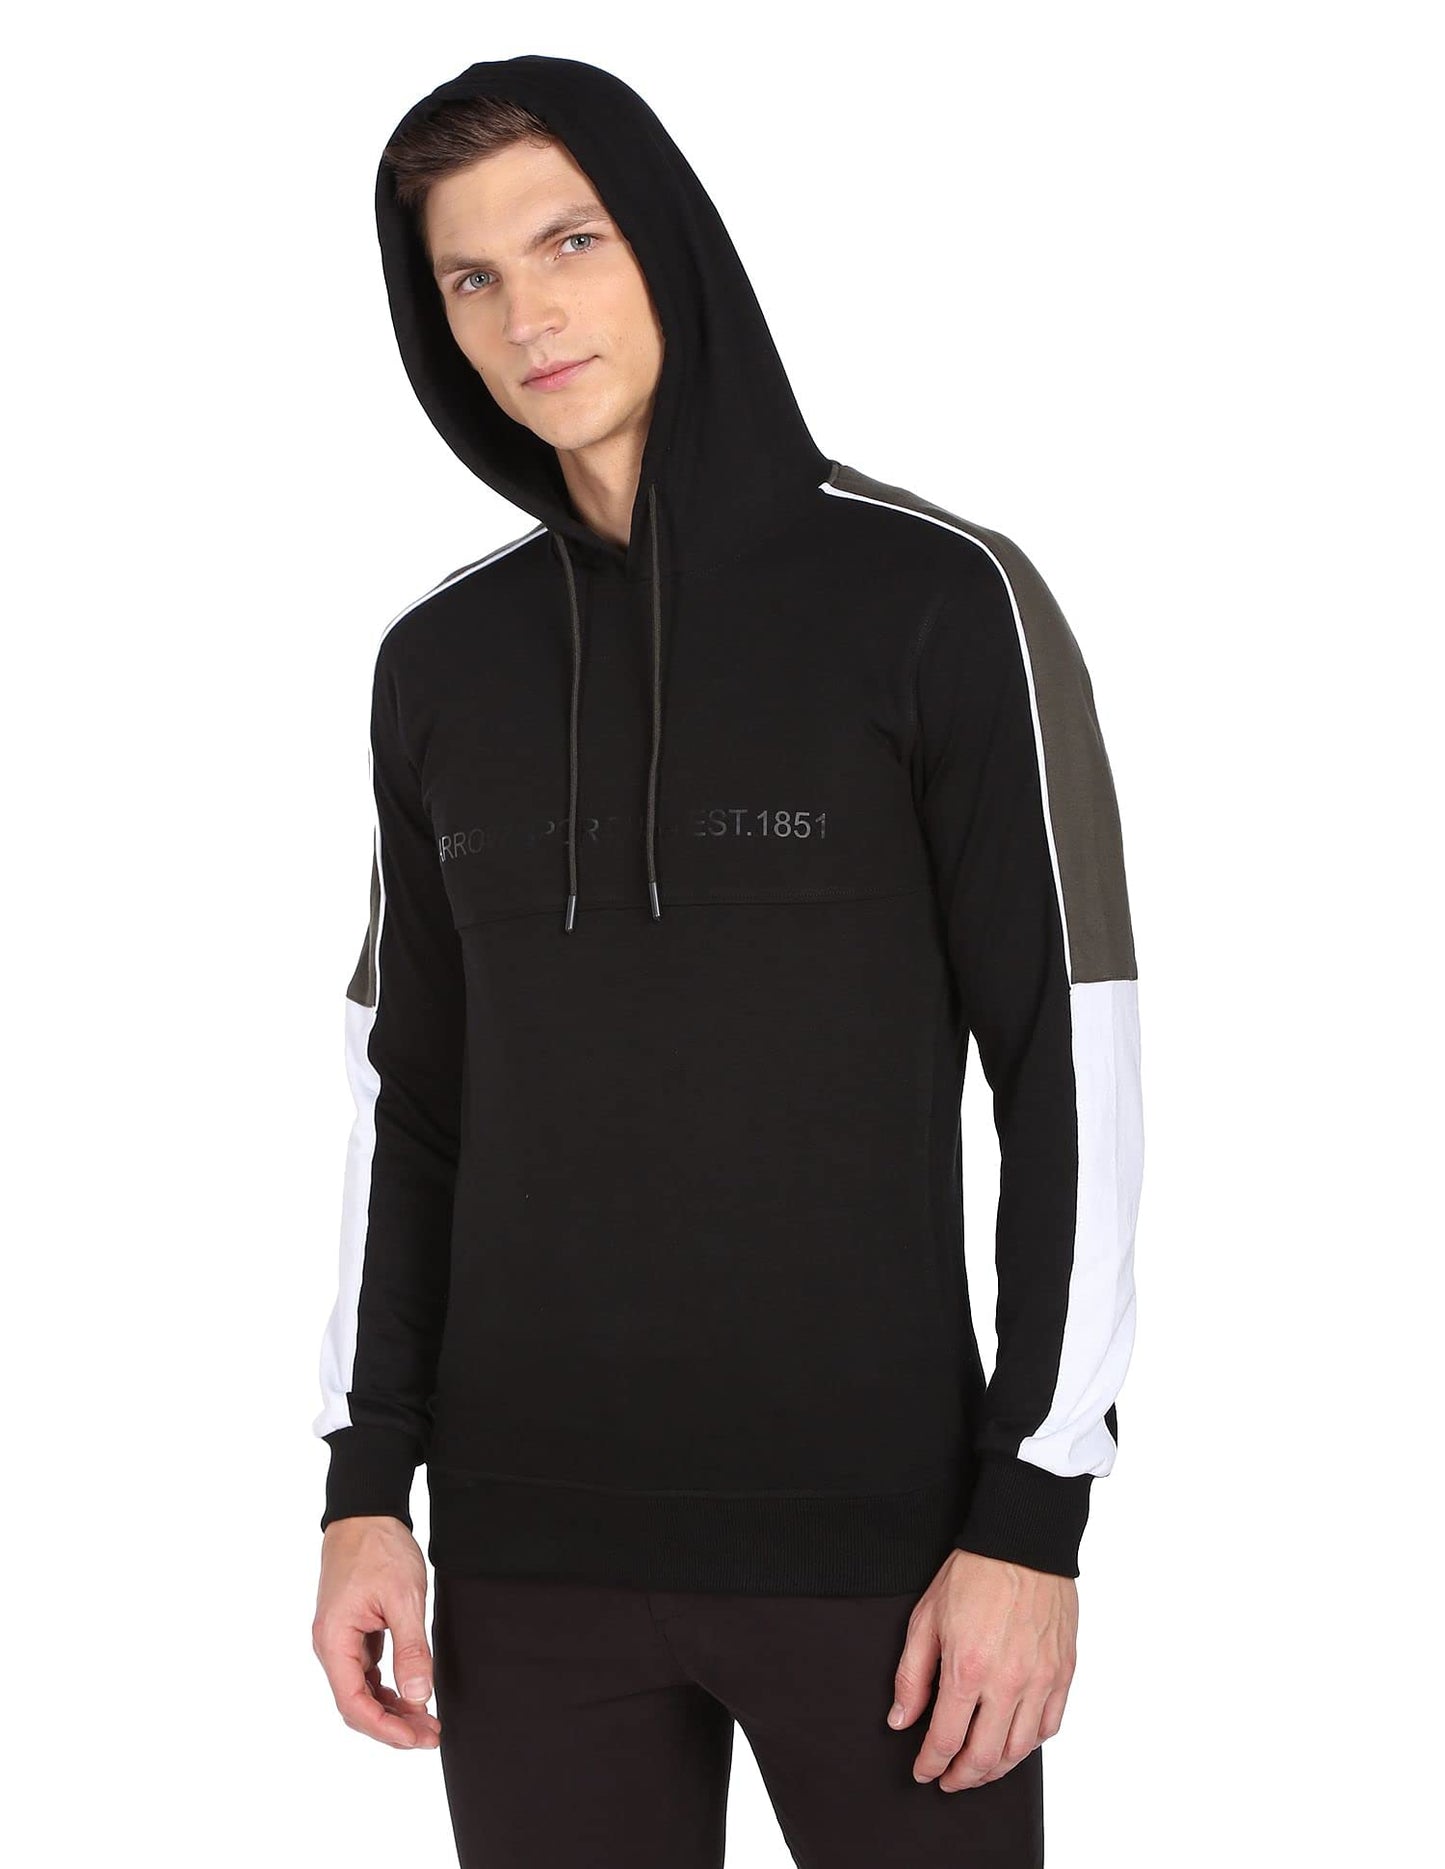 Arrow Men's Cotton Hooded Neck Sweatshirt (Black) 